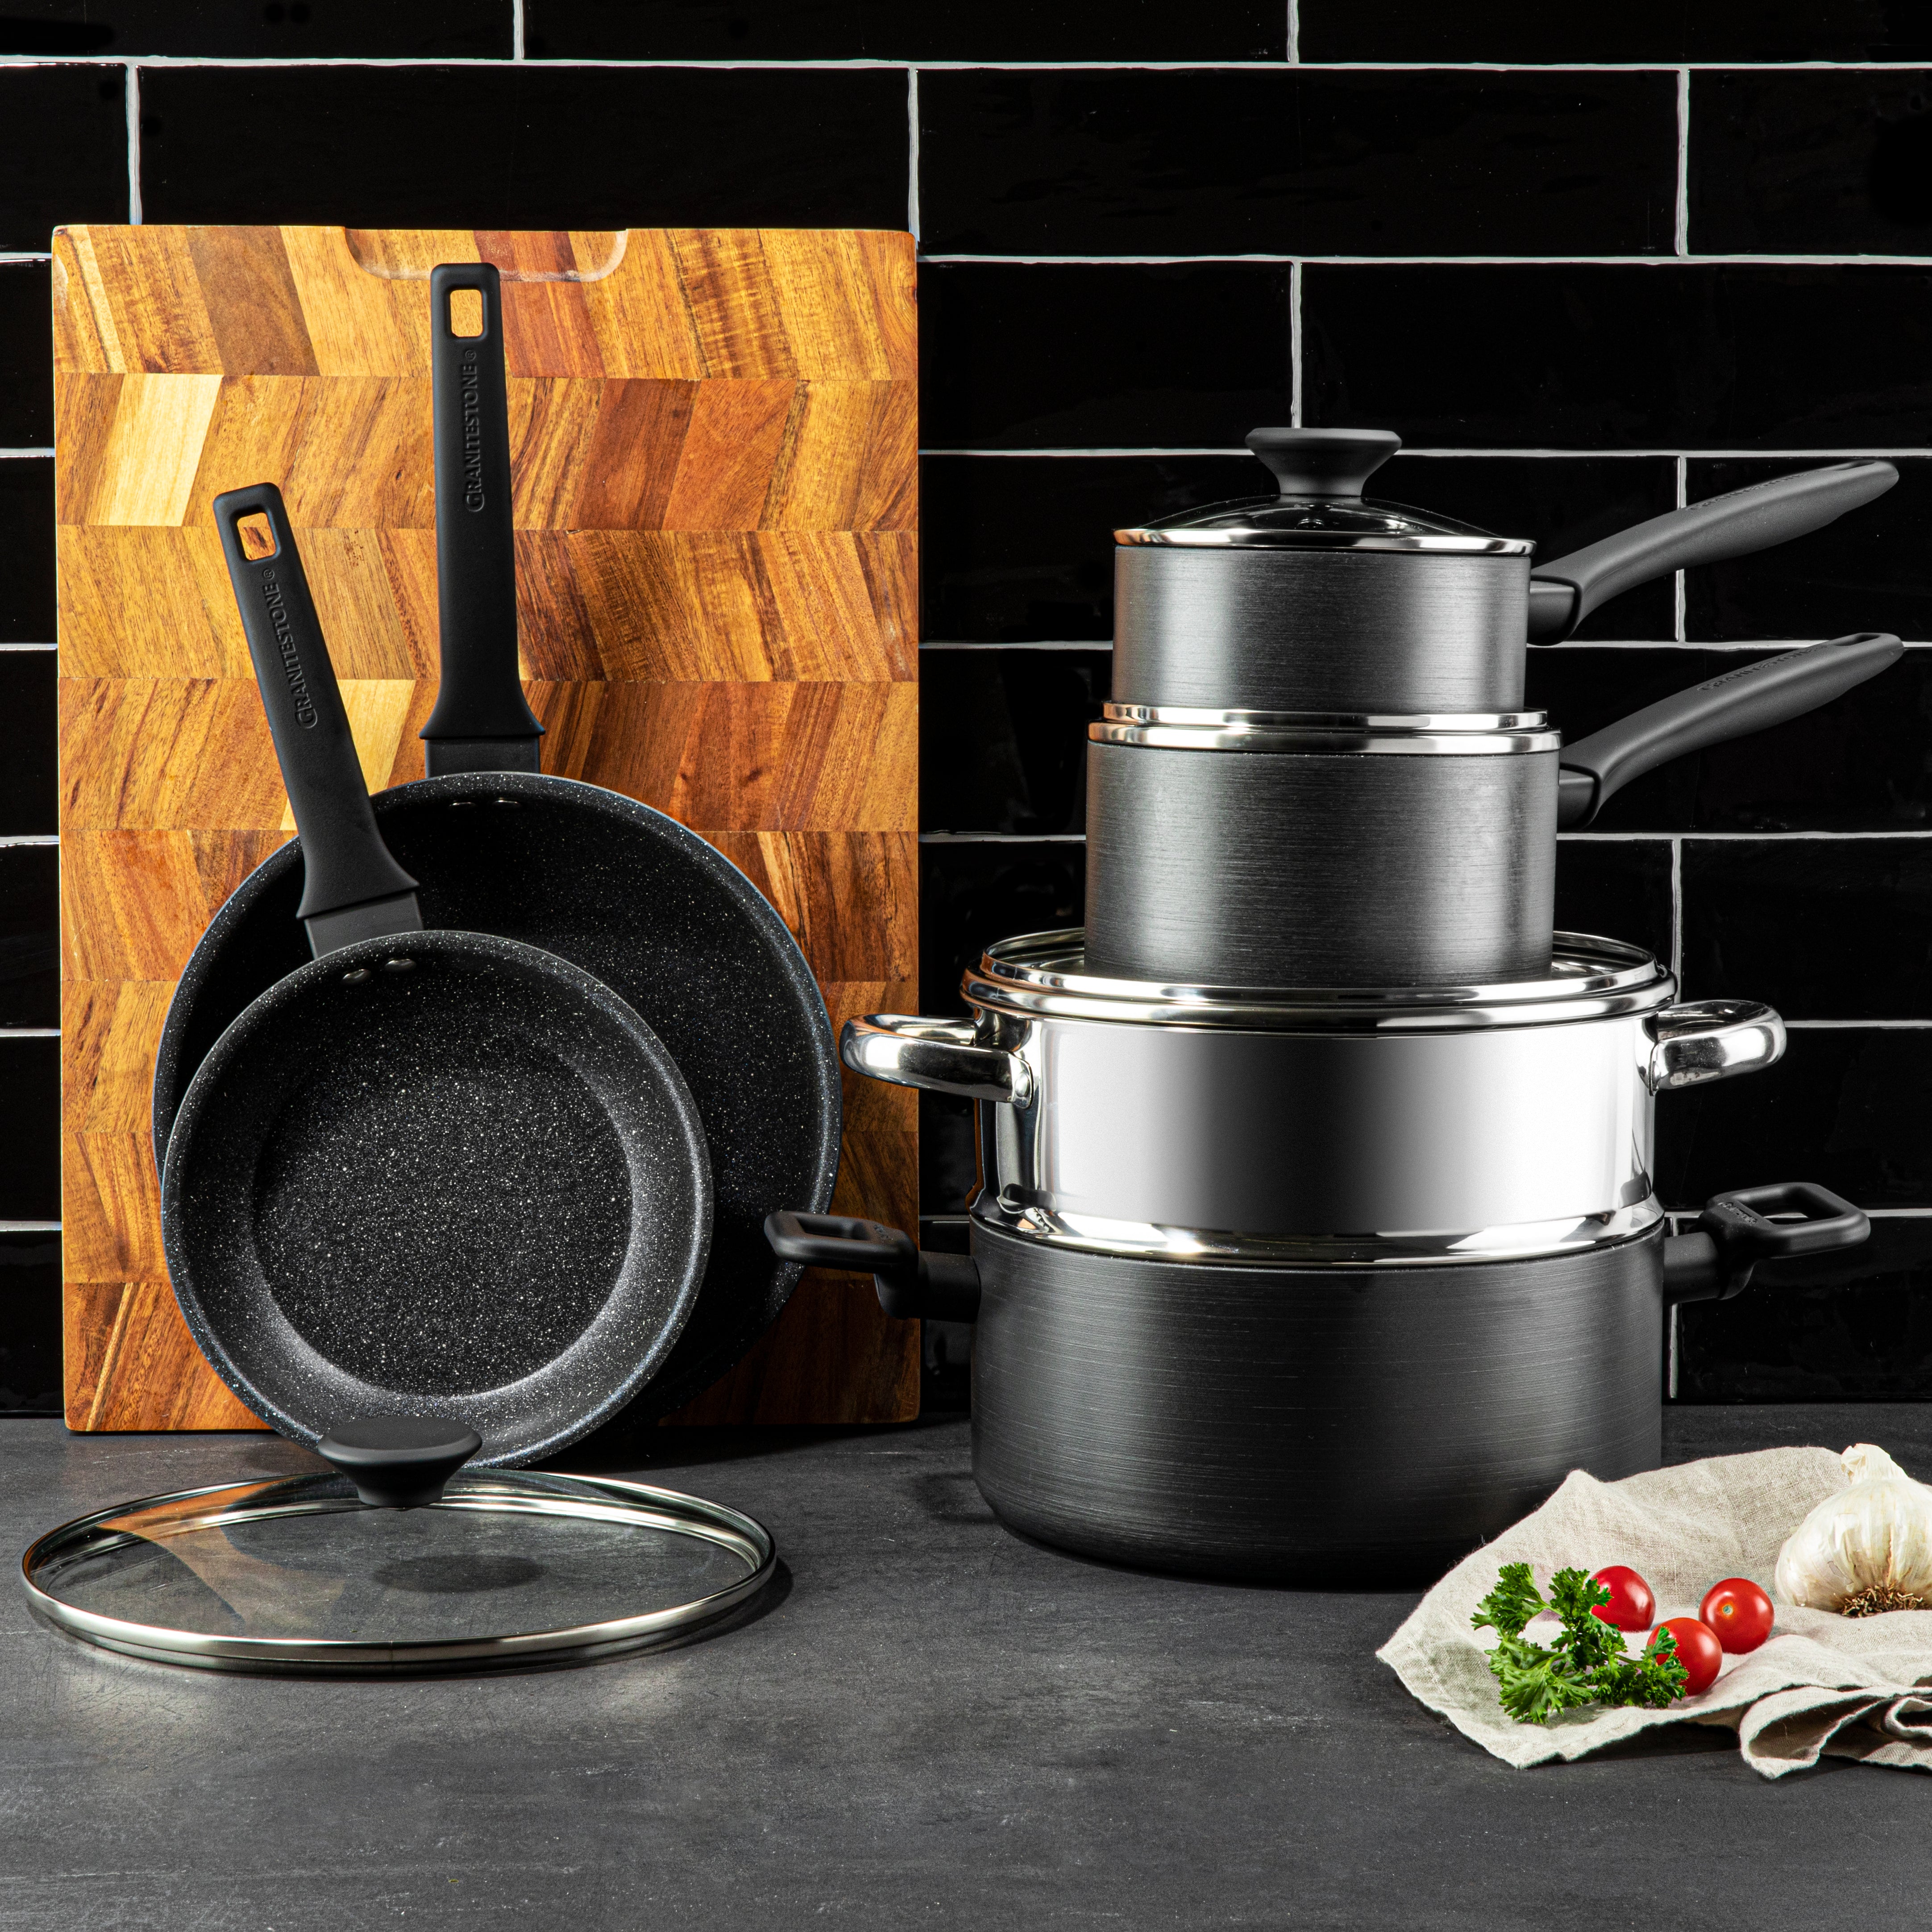 10 Pieces Induction Pots and Pans Set Non-stick Granite Kitchen